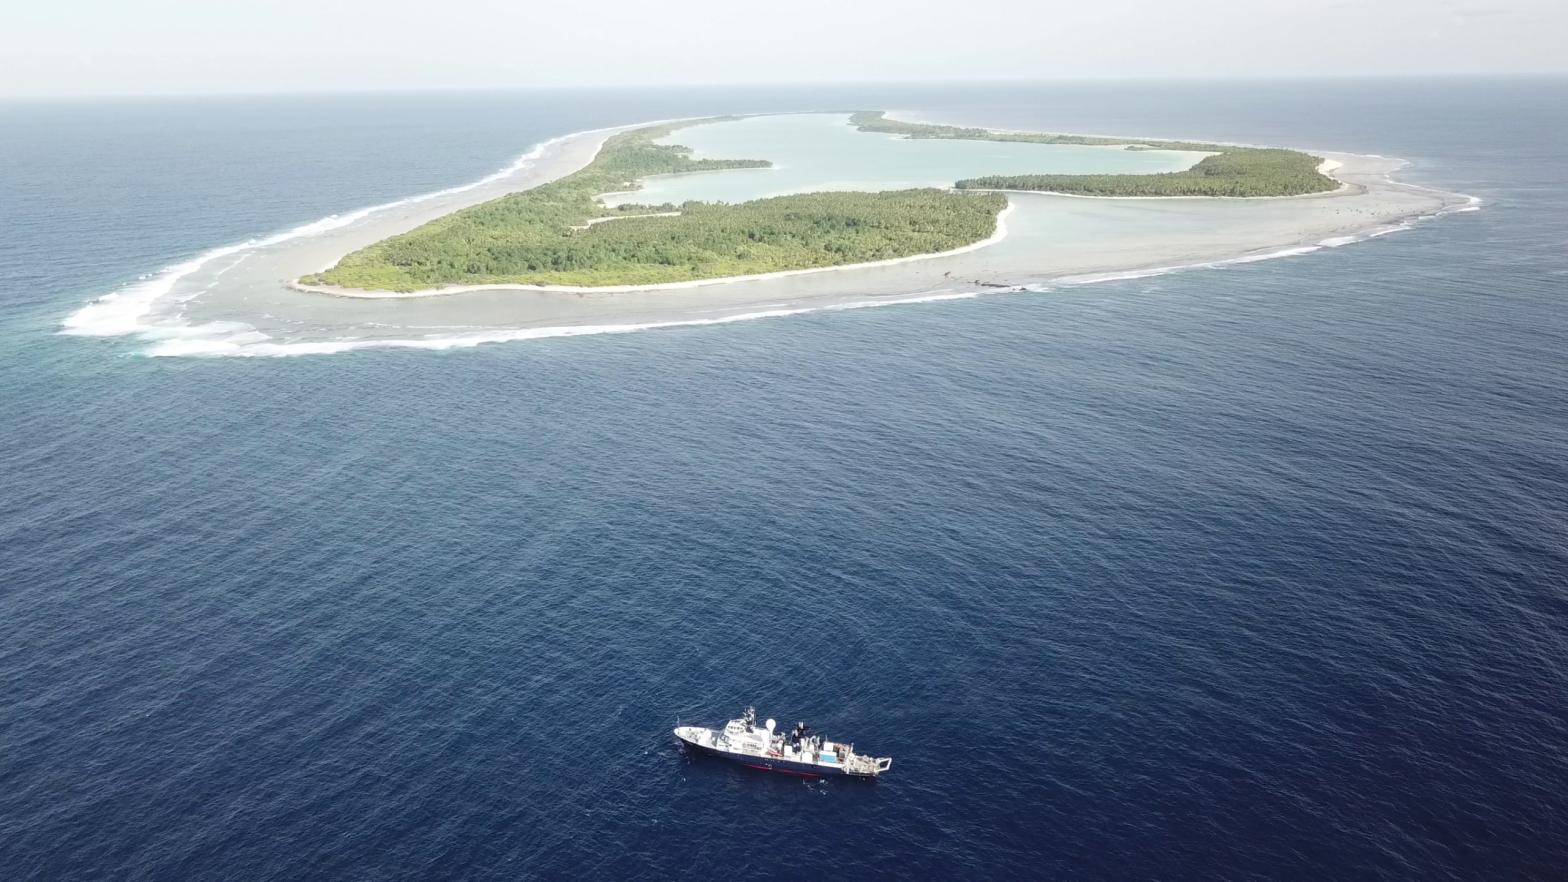 The research vessel Falkor in the Phoenix Islands Protected Area.  (Image: Schmidt Ocean Institute)